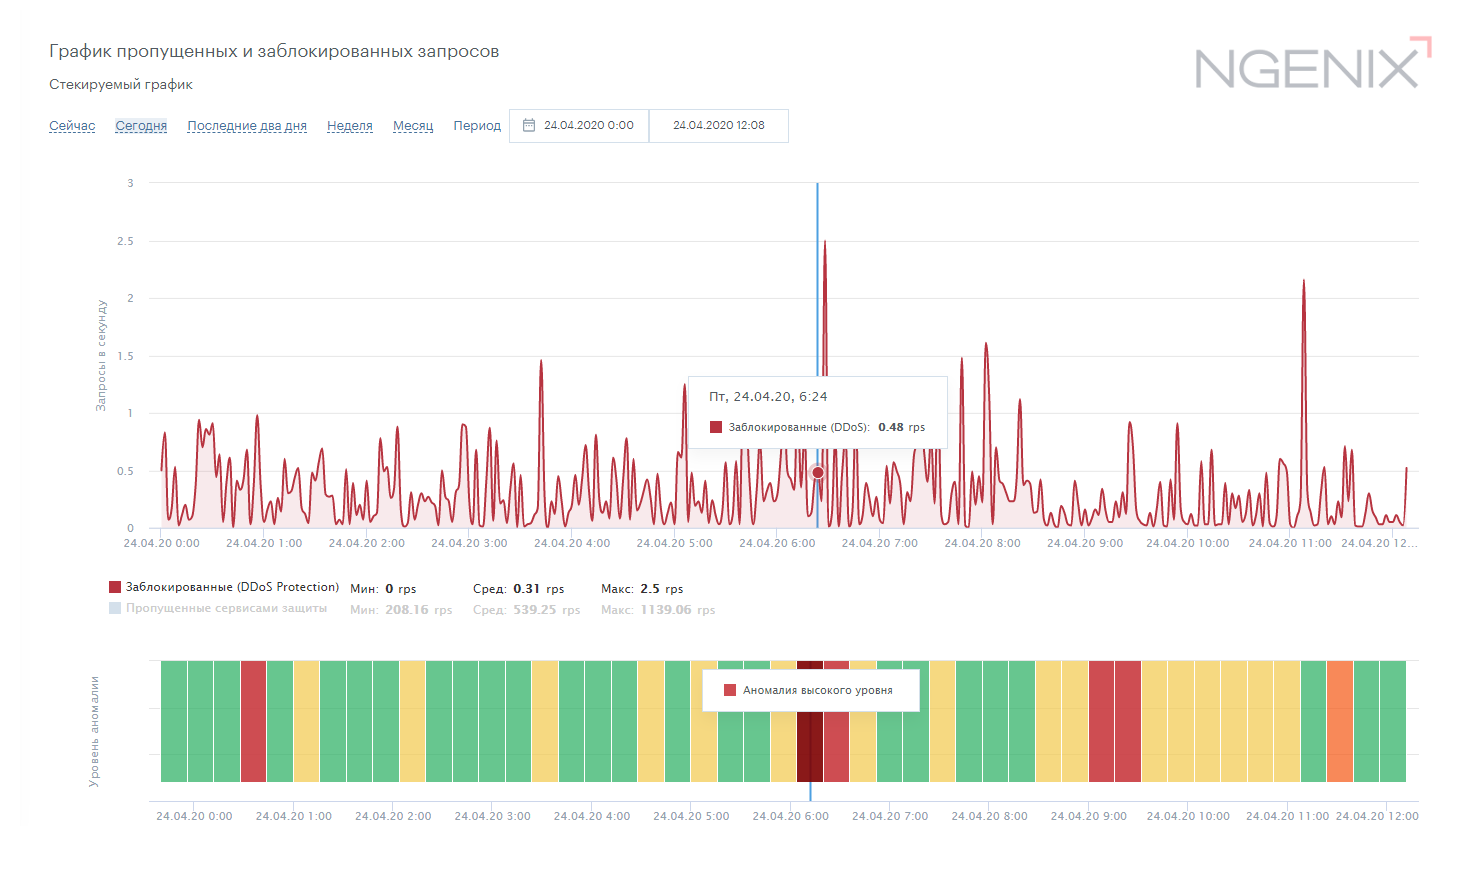 NGENIX DDoS Protection – График пропущенных и заблокированных запросов